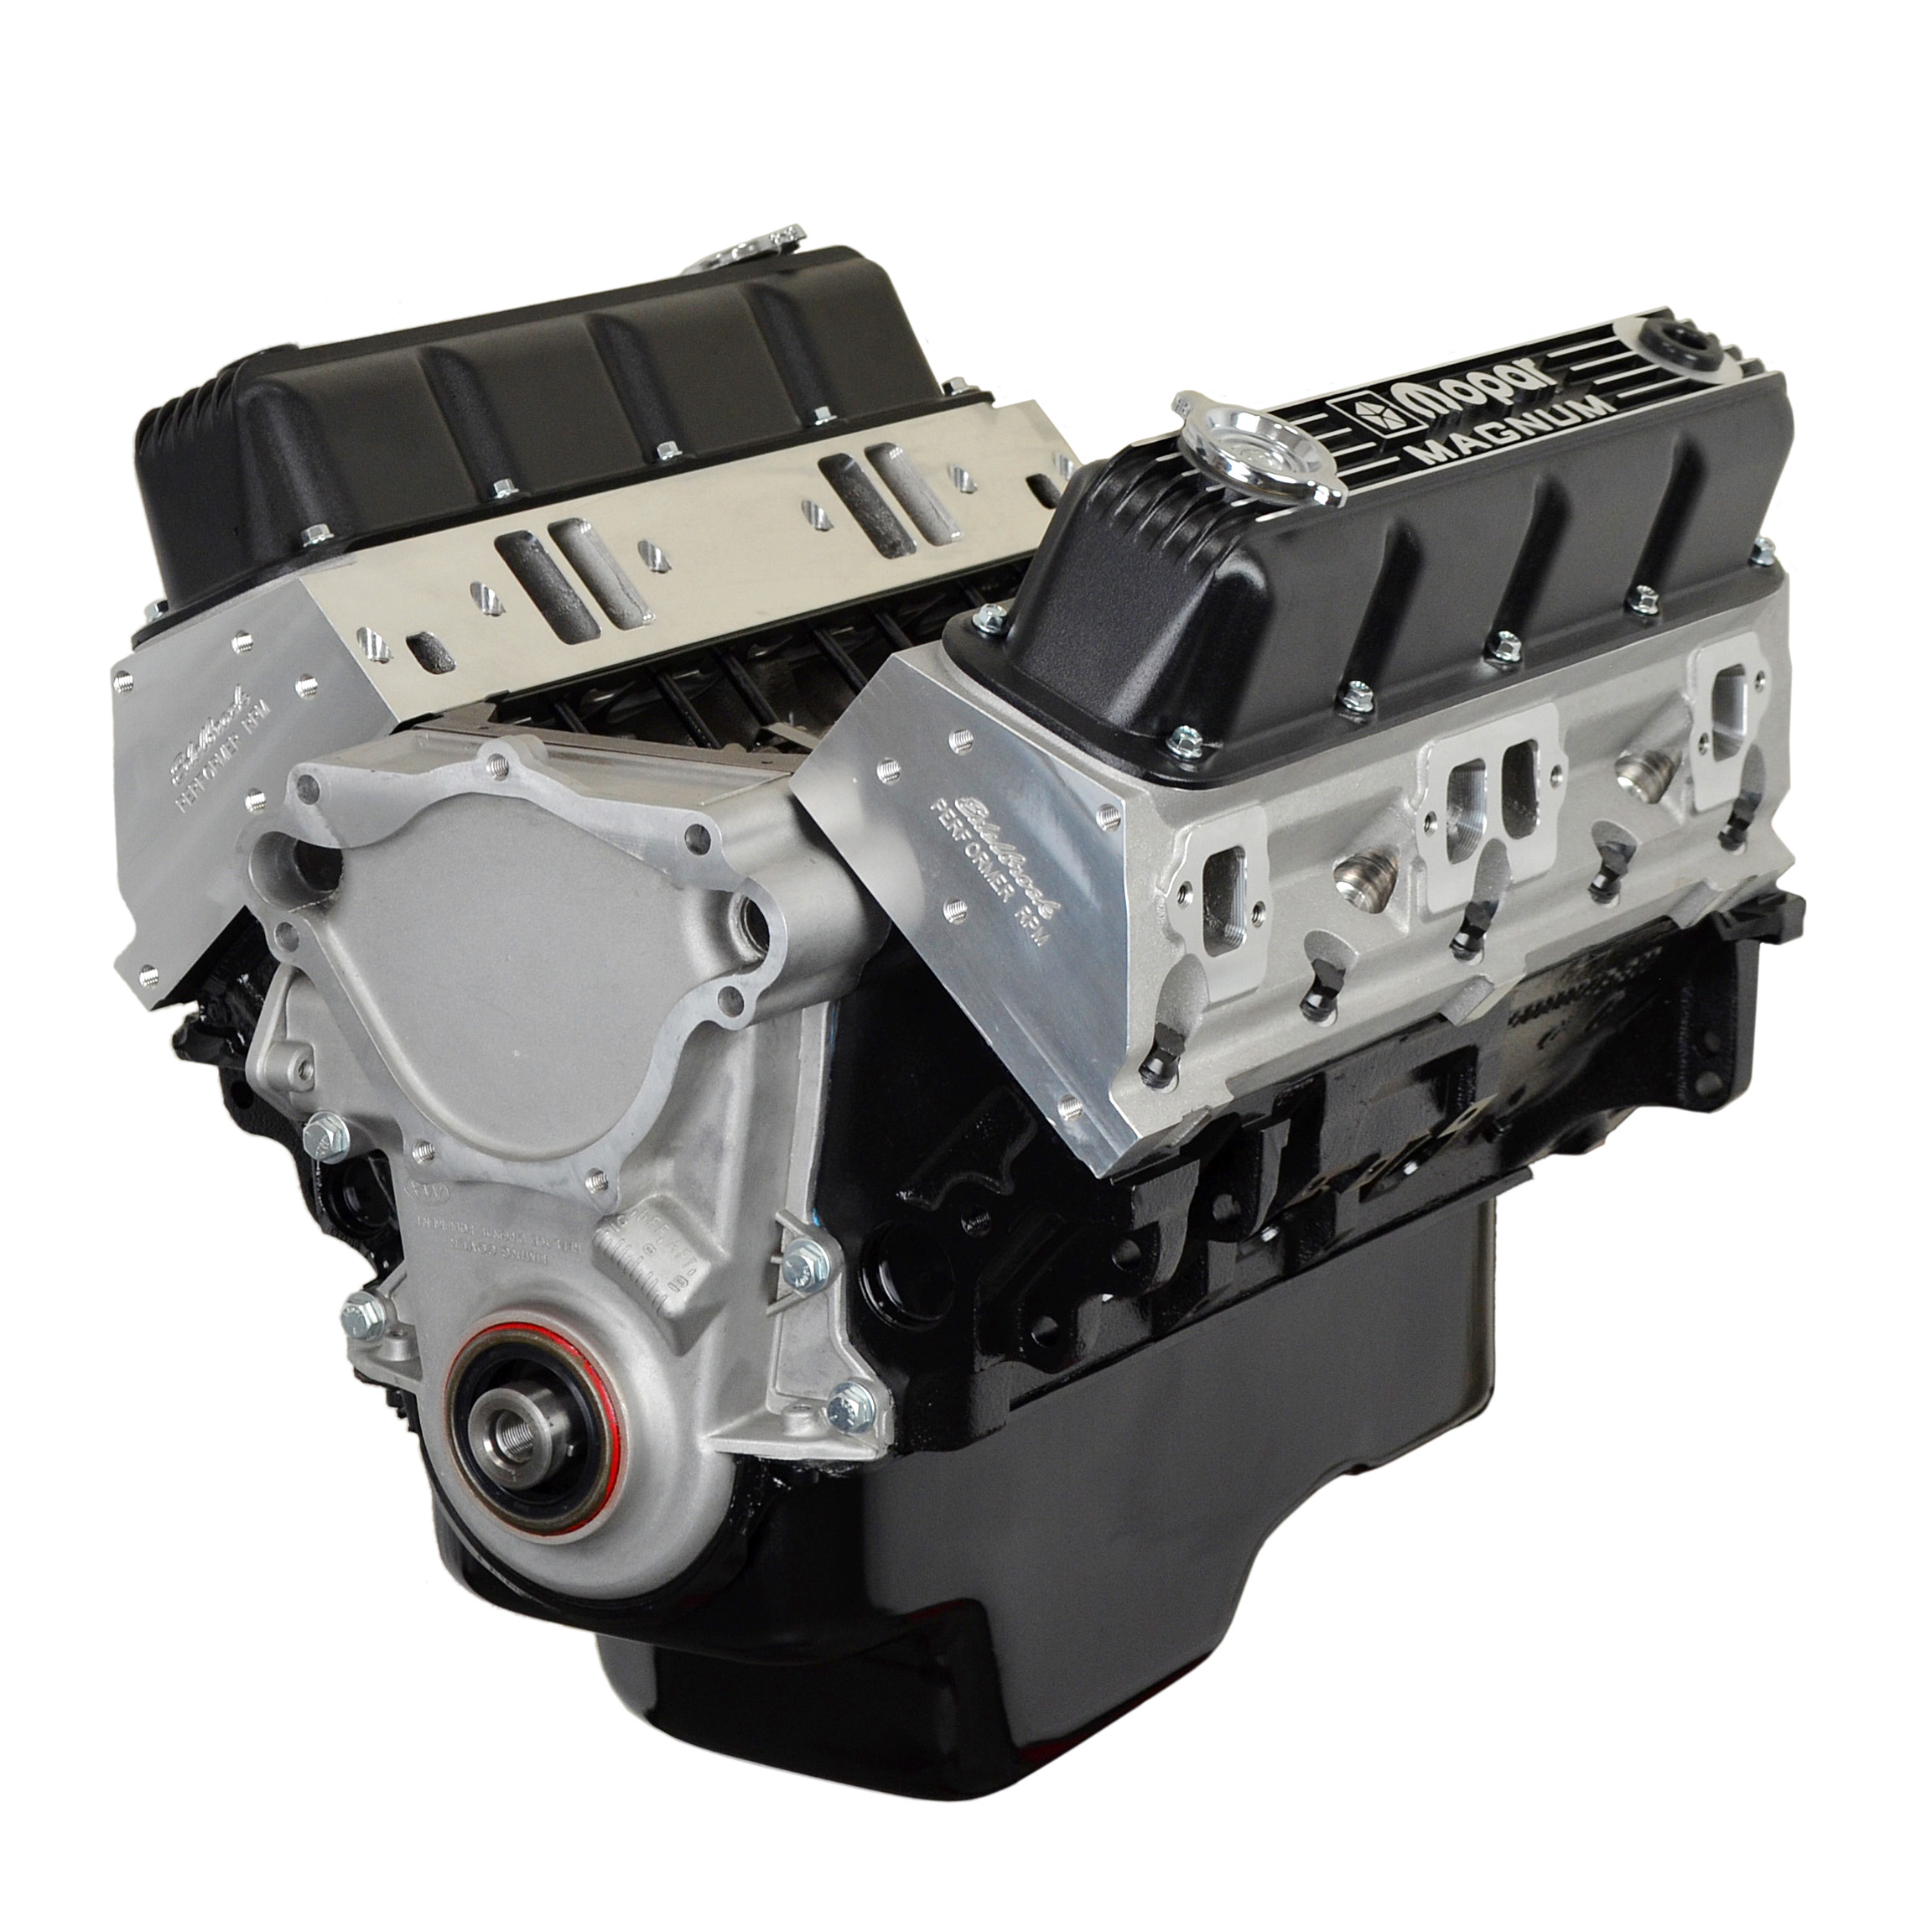 ATK Engines Remanufactured Cylinder Head for 2001-2011 Chrysler/Dodge/Jeep  with 3.3/3.8L V6